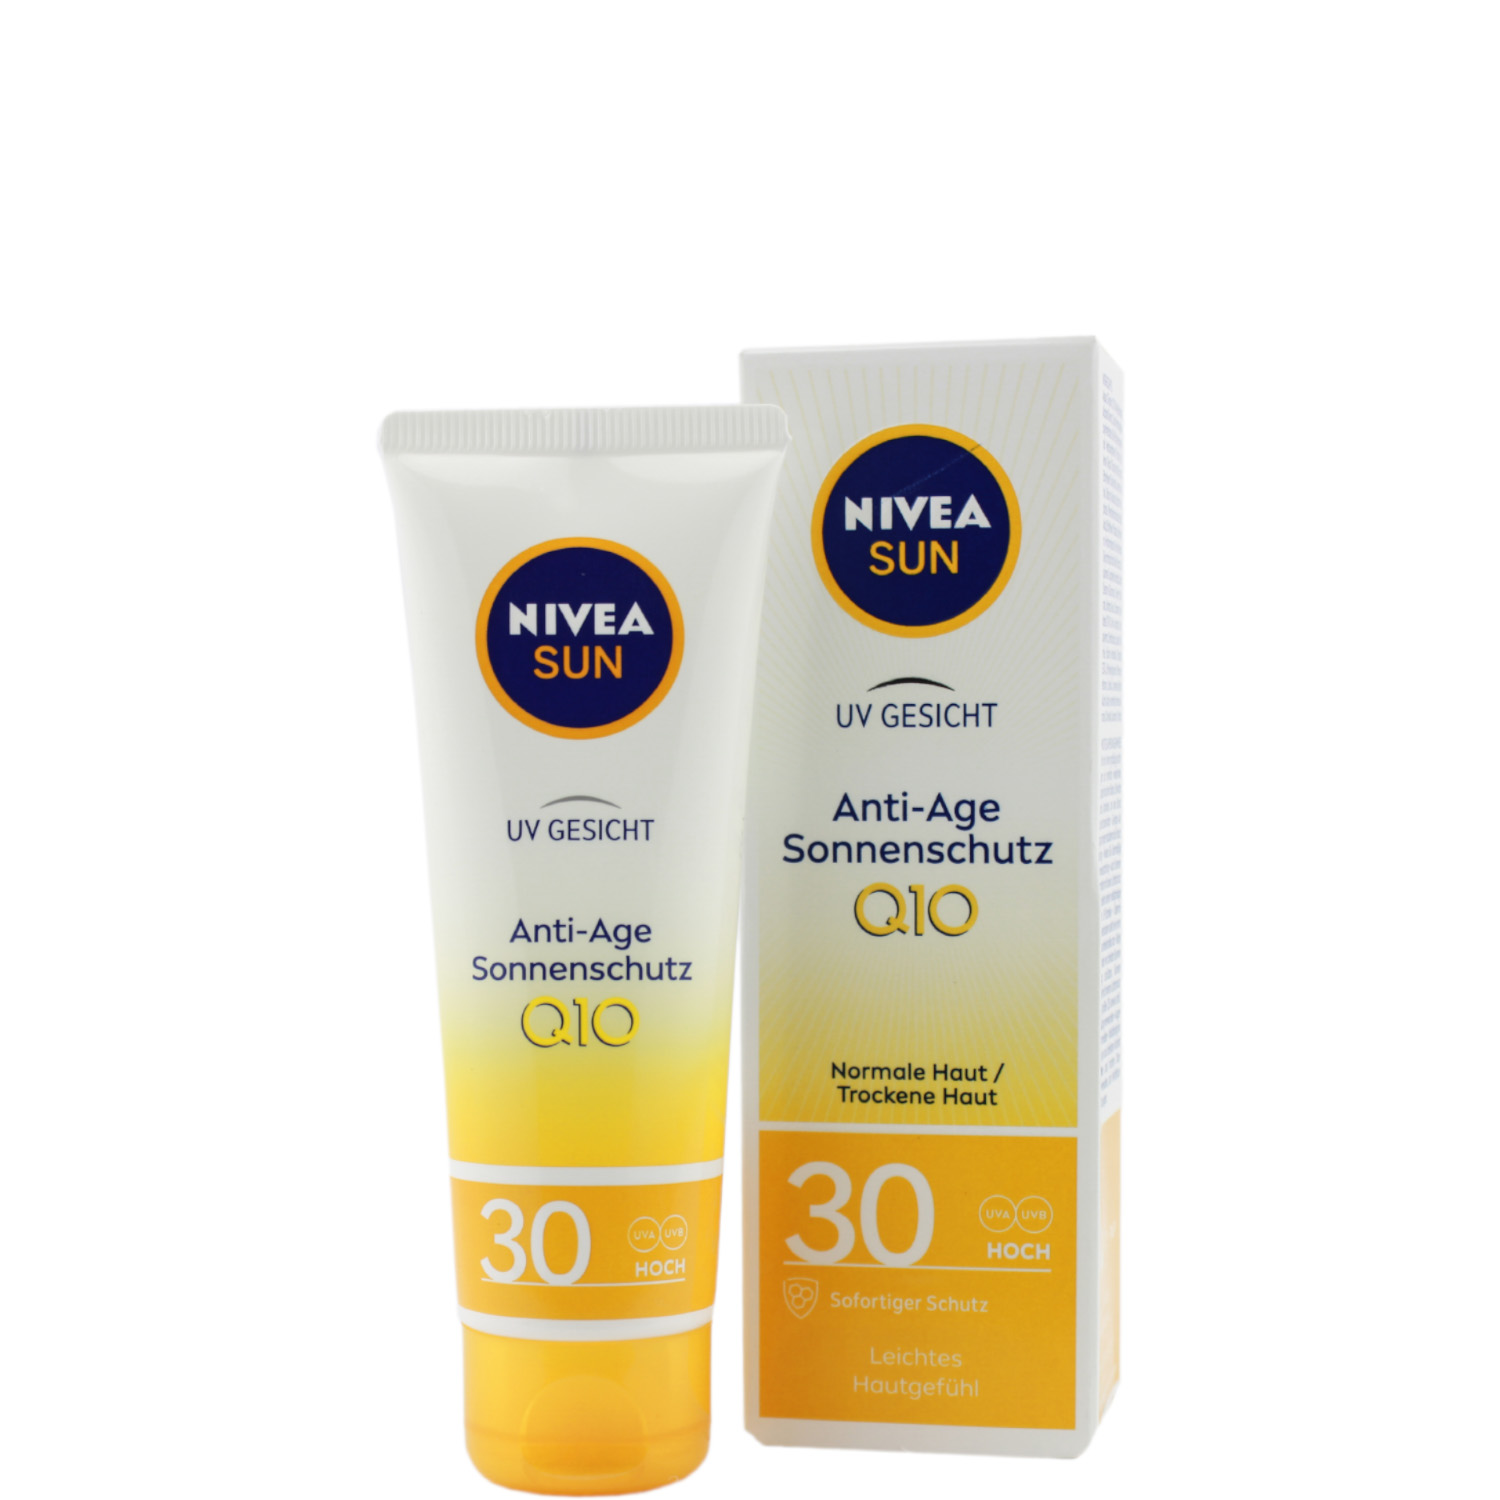 Nivea Sun UV Gesicht  Anti-Age Sonnenschutz Q10 mit LSF30 50ml